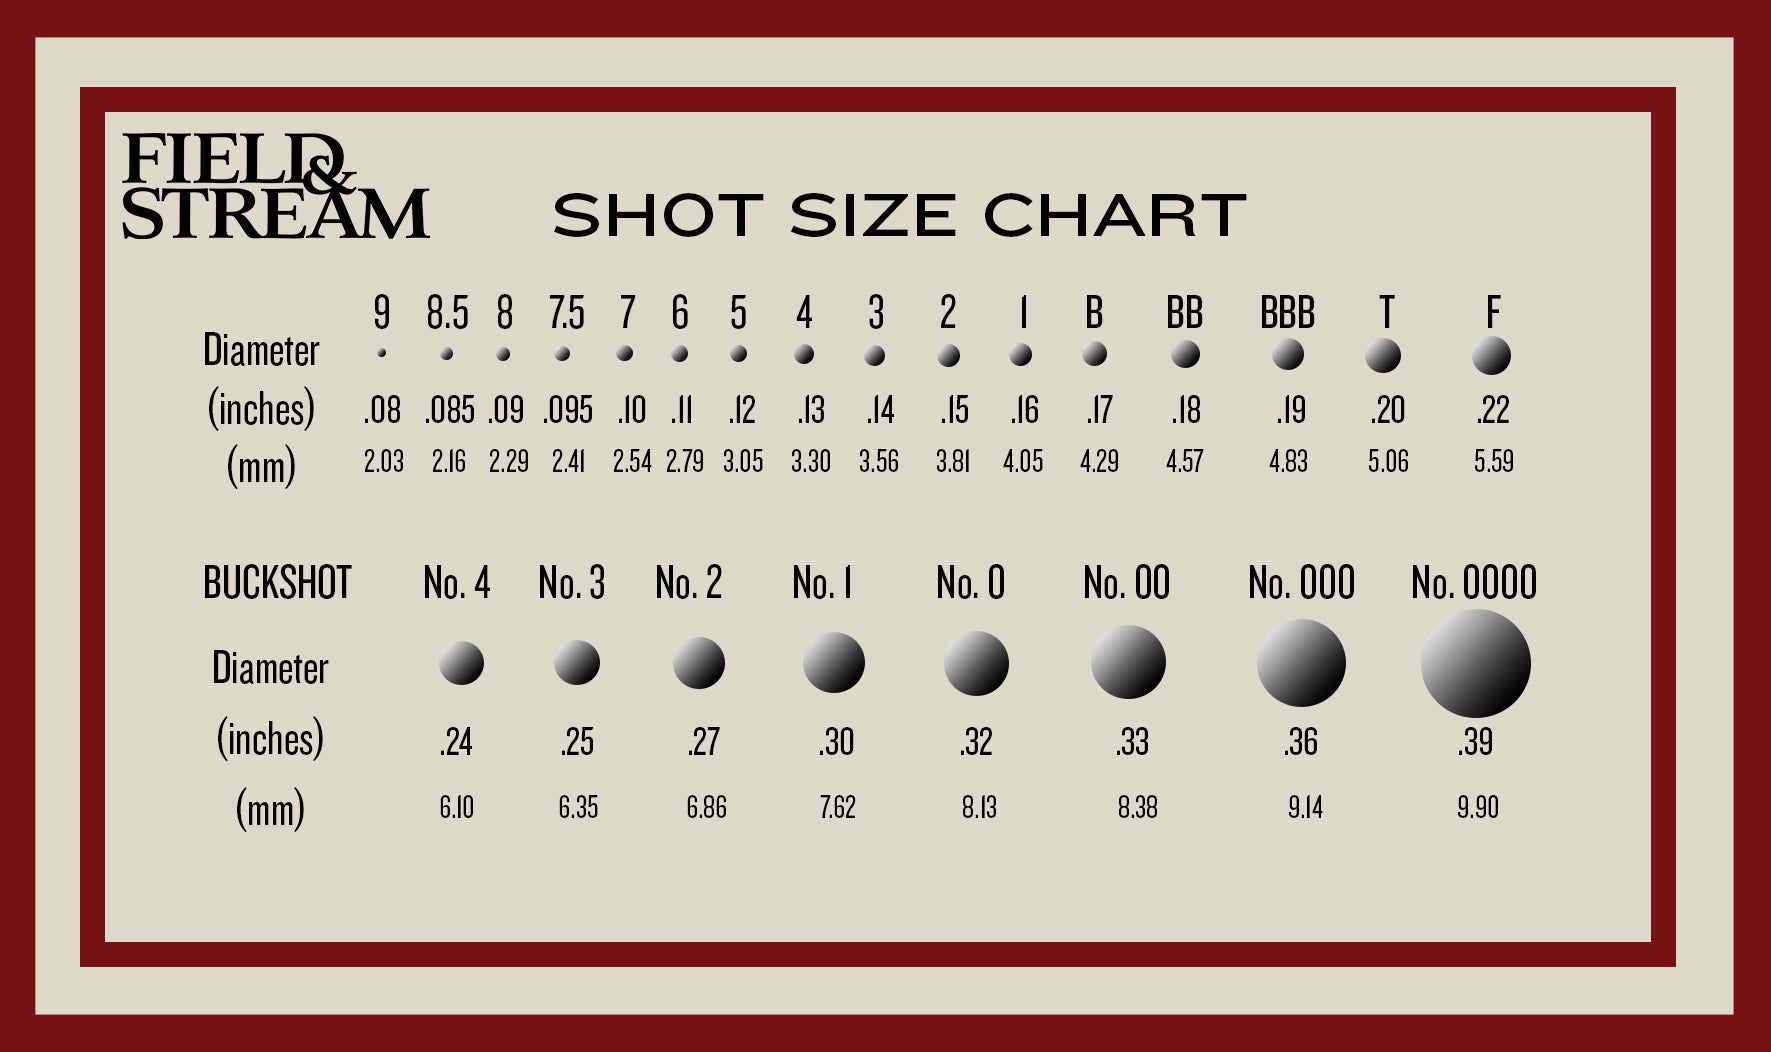 Shot size chart